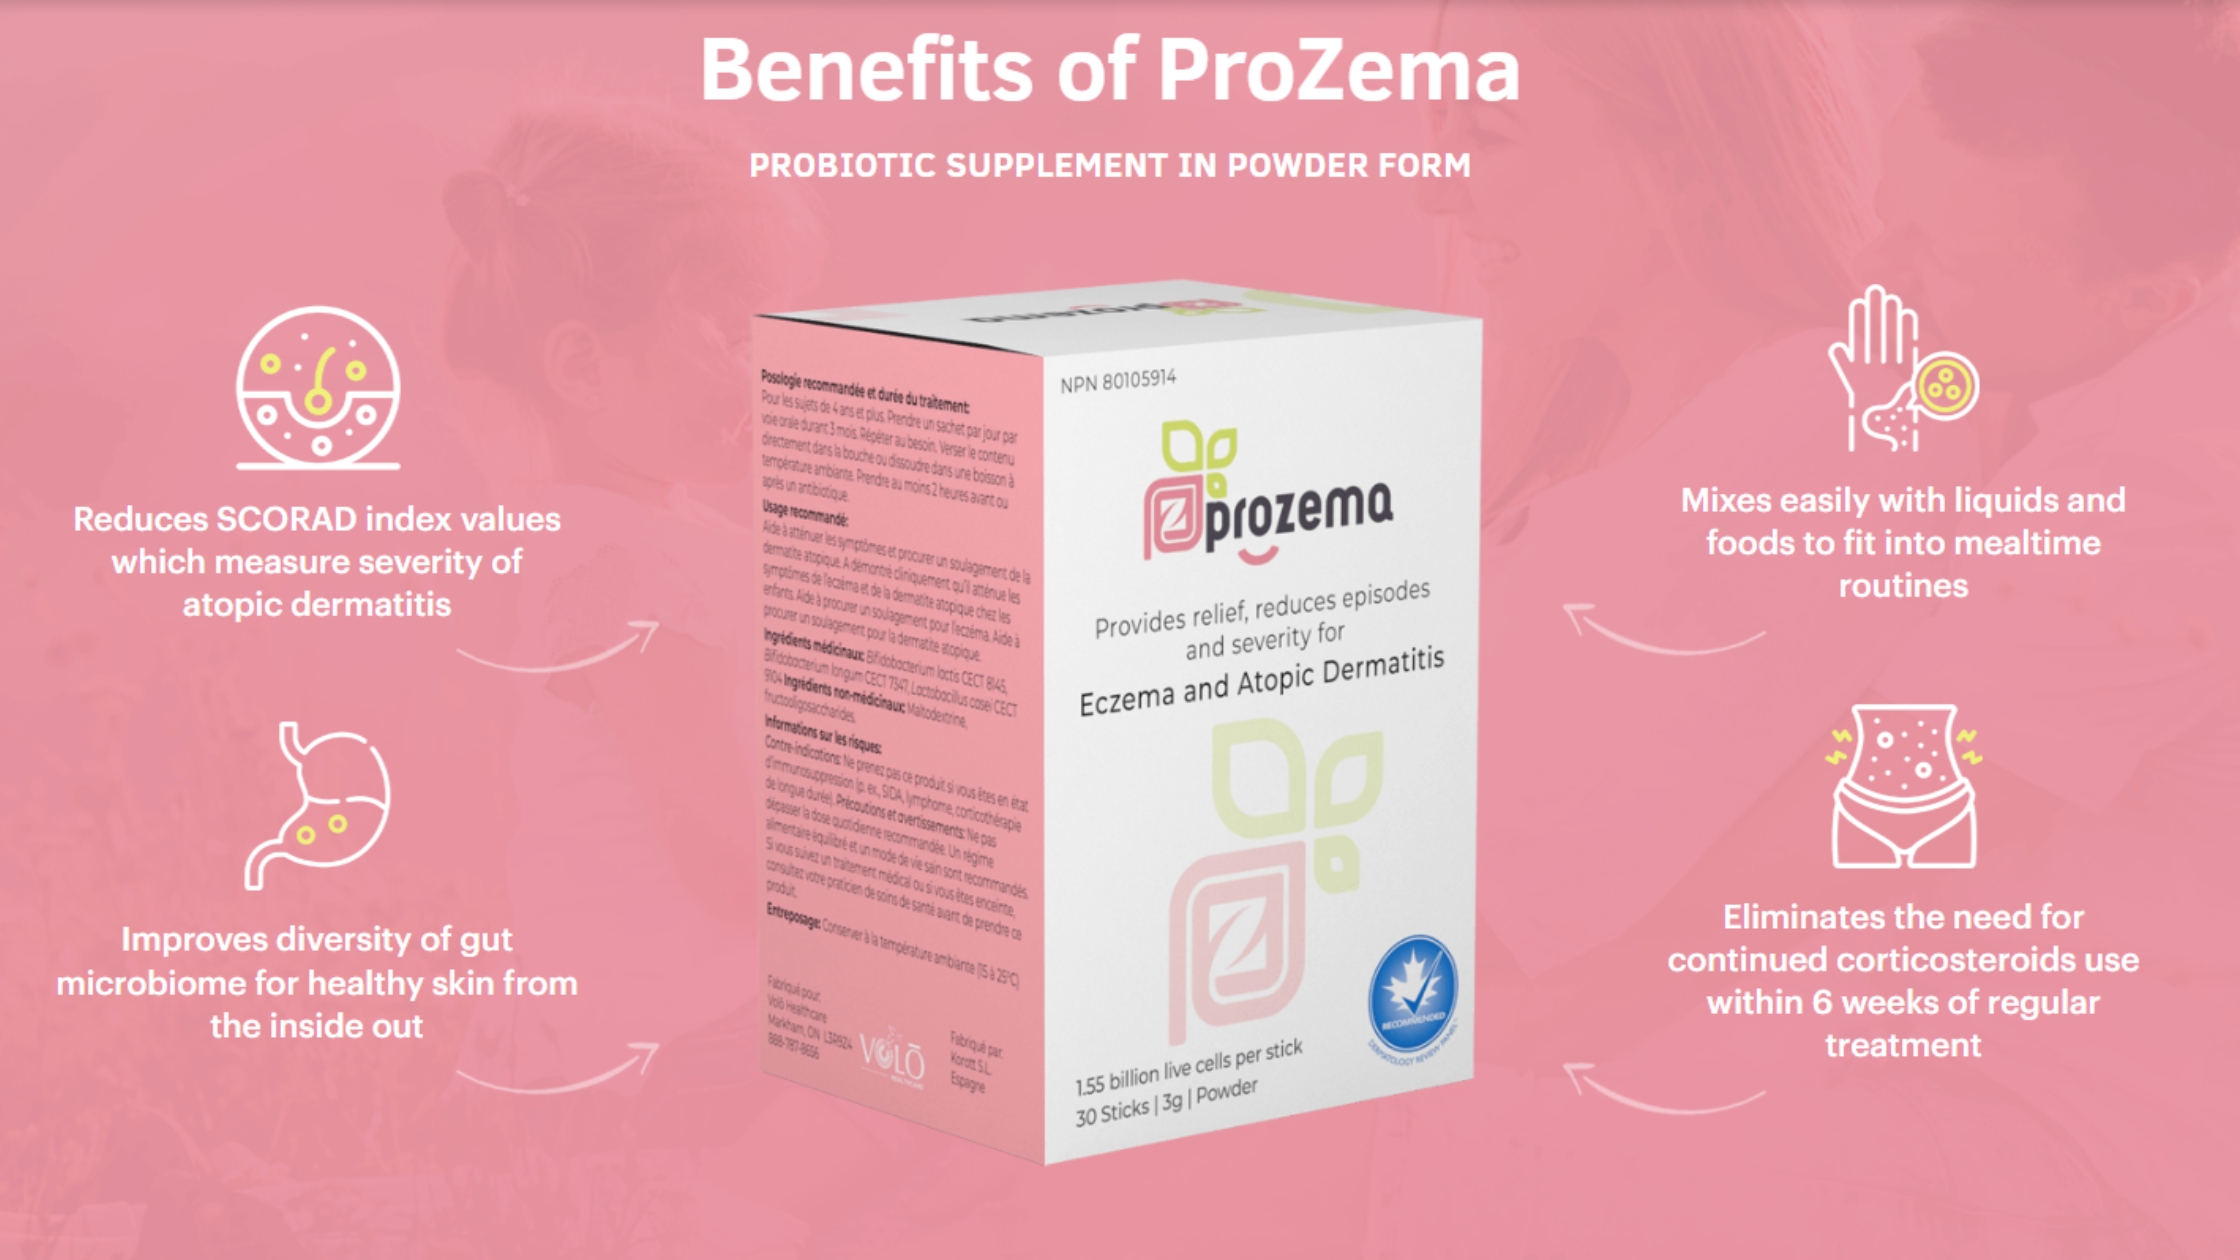 Benefits of Prozema Probiotic